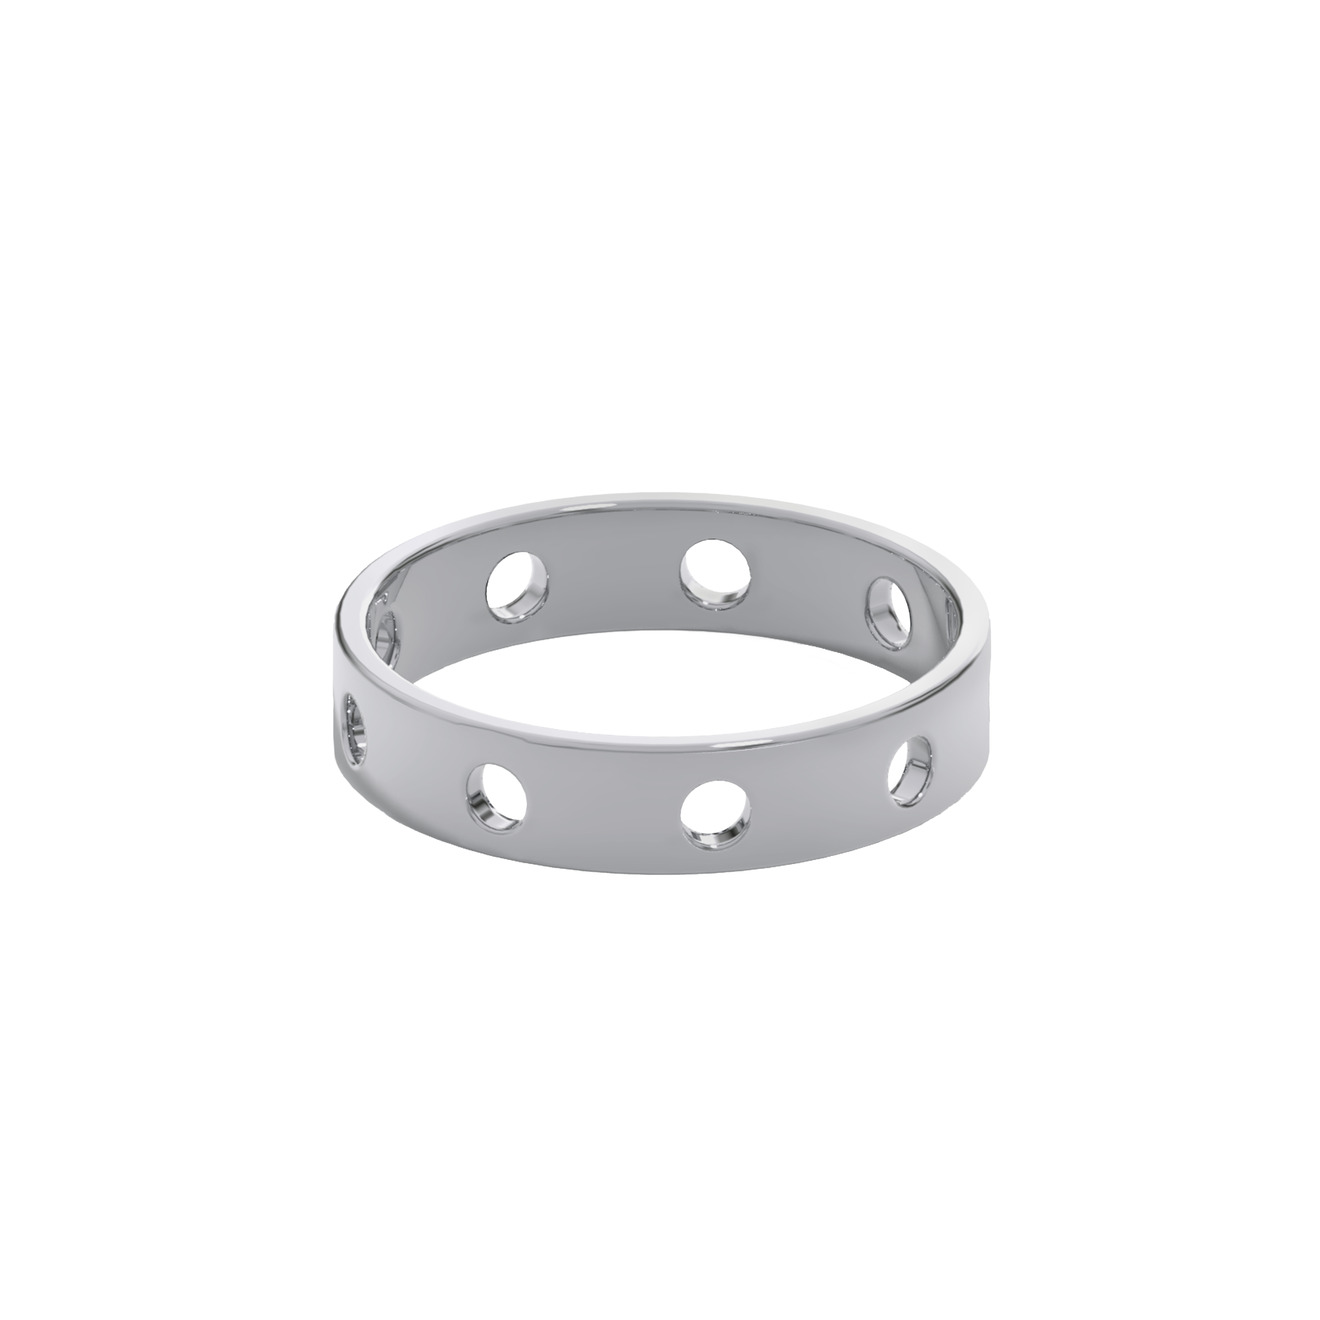 Prosto Jewelry Кольцо из серебра с окошками lusin jewelry кольцо из серебра с узлом armenian knot ring